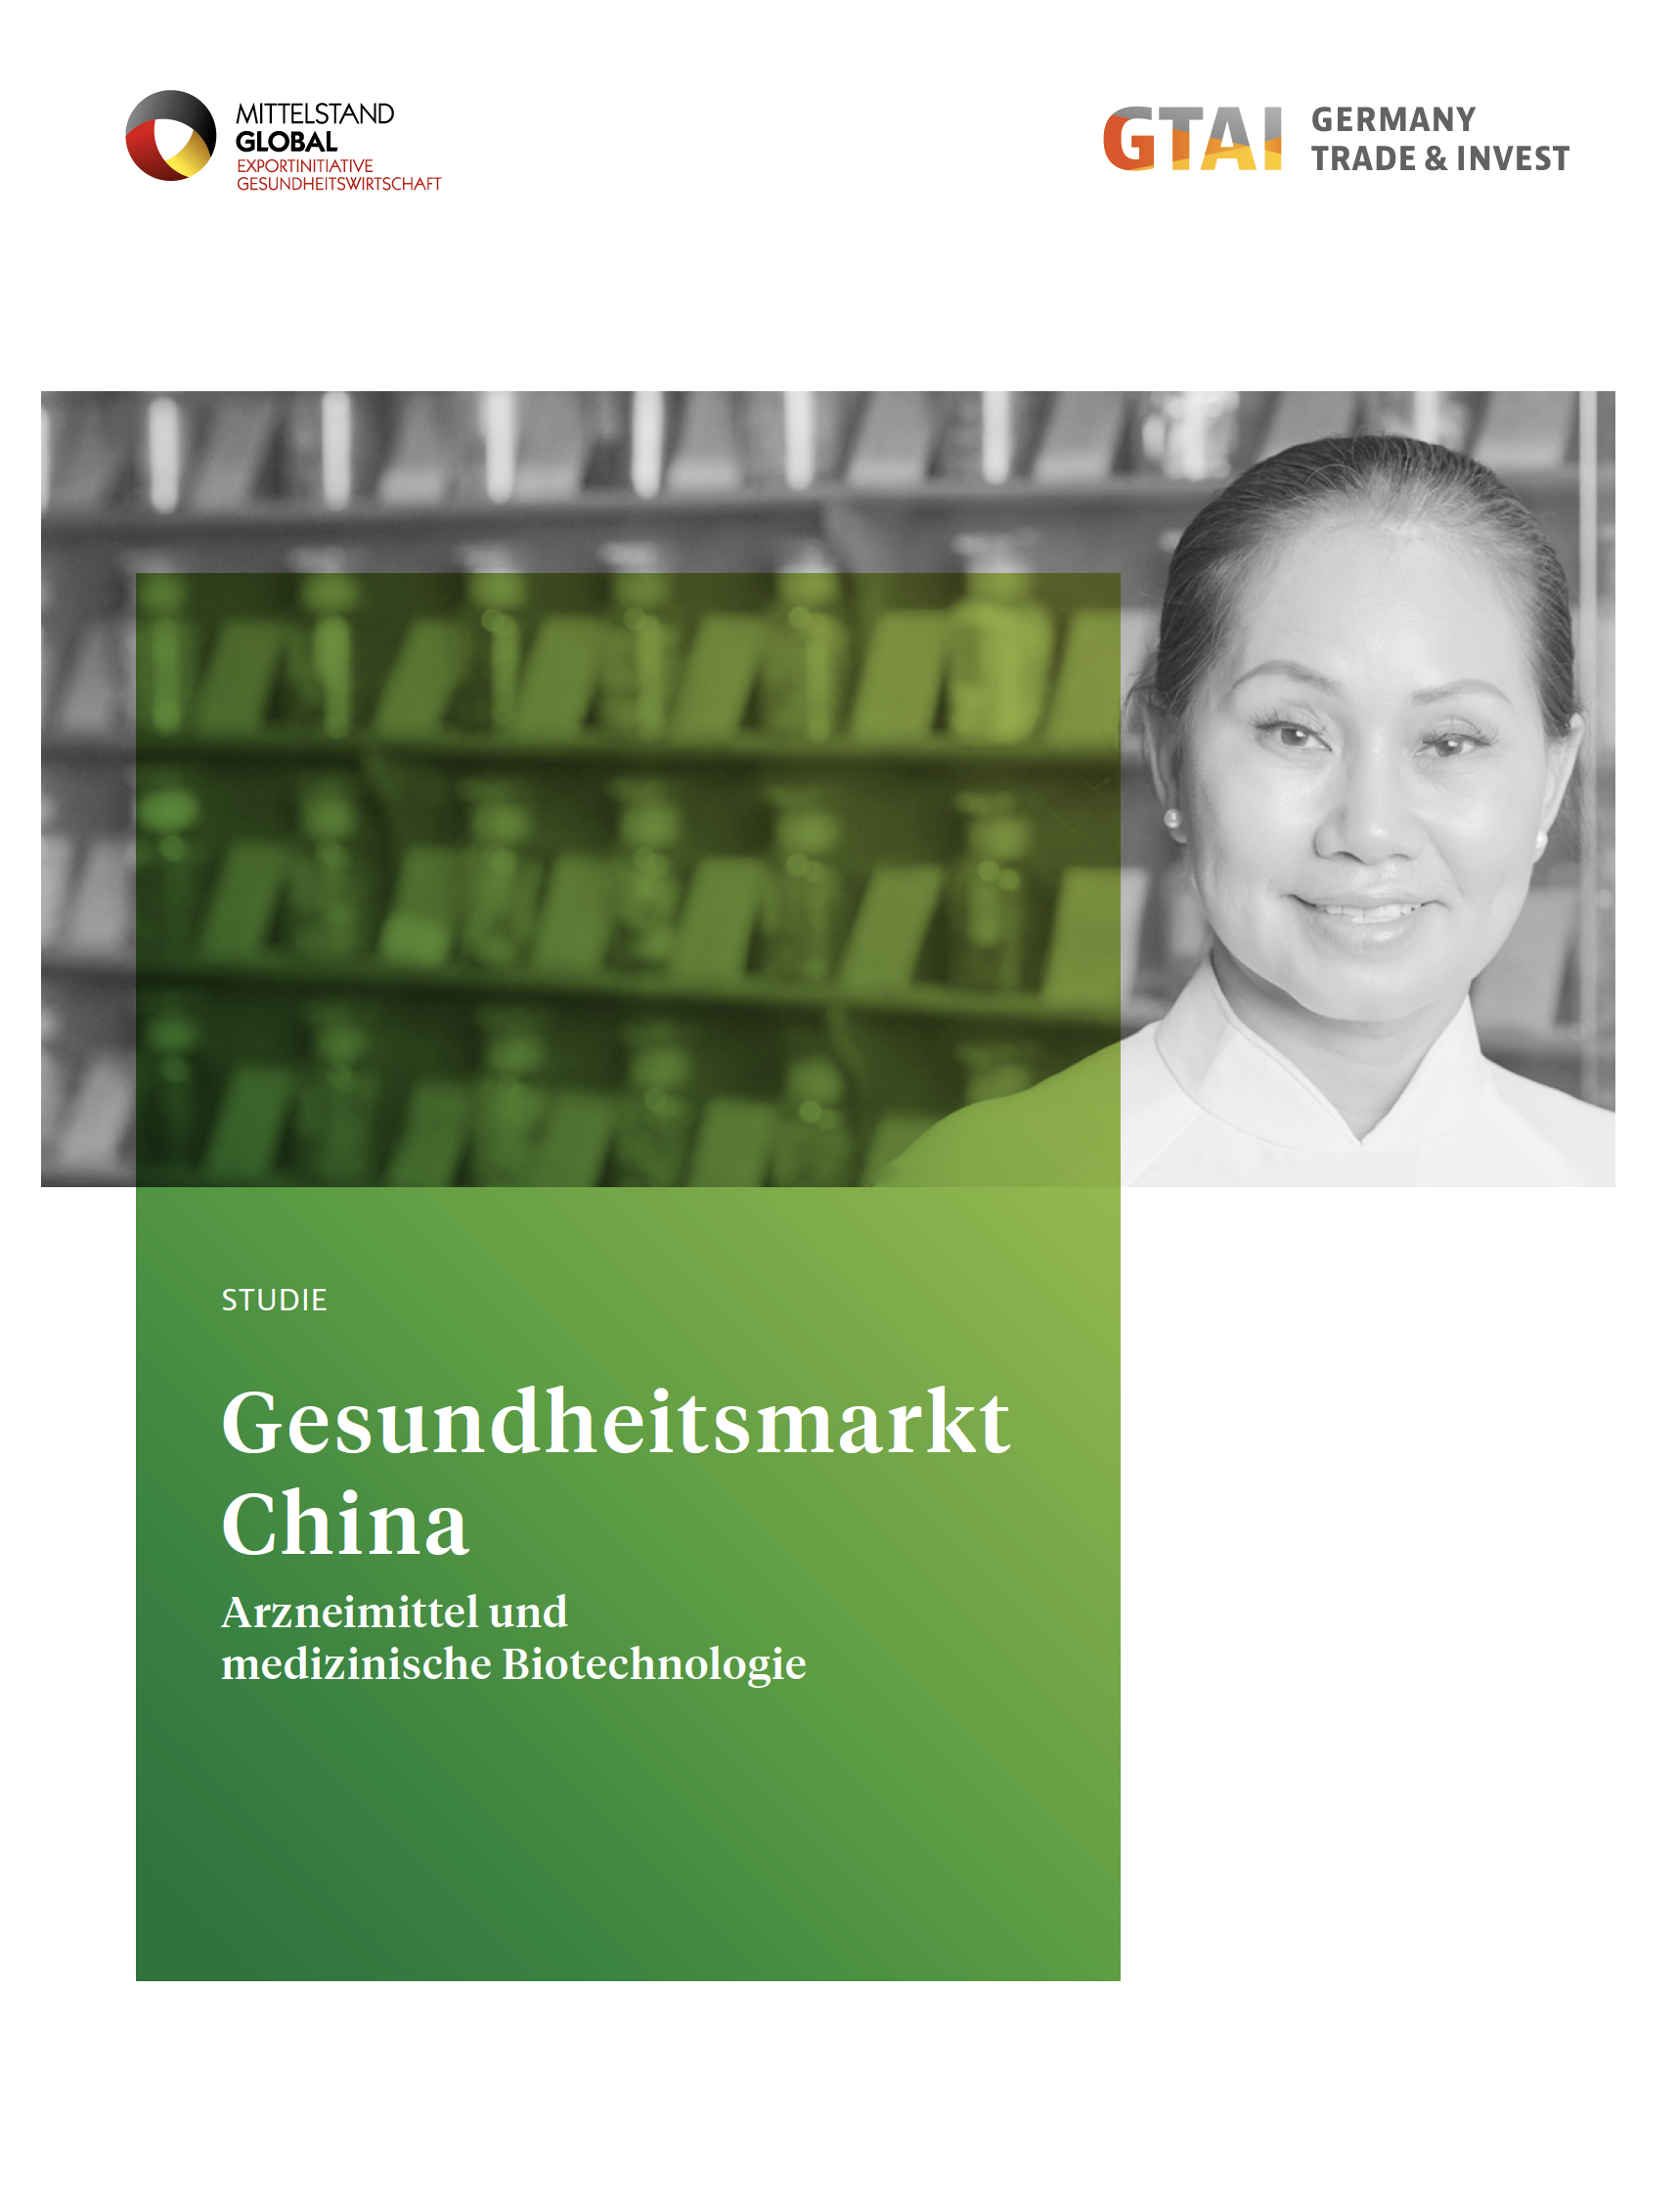 Gesundheitsmarkt China – Arzneimittel und medizinische Biotechnologie (22 pages, in German)